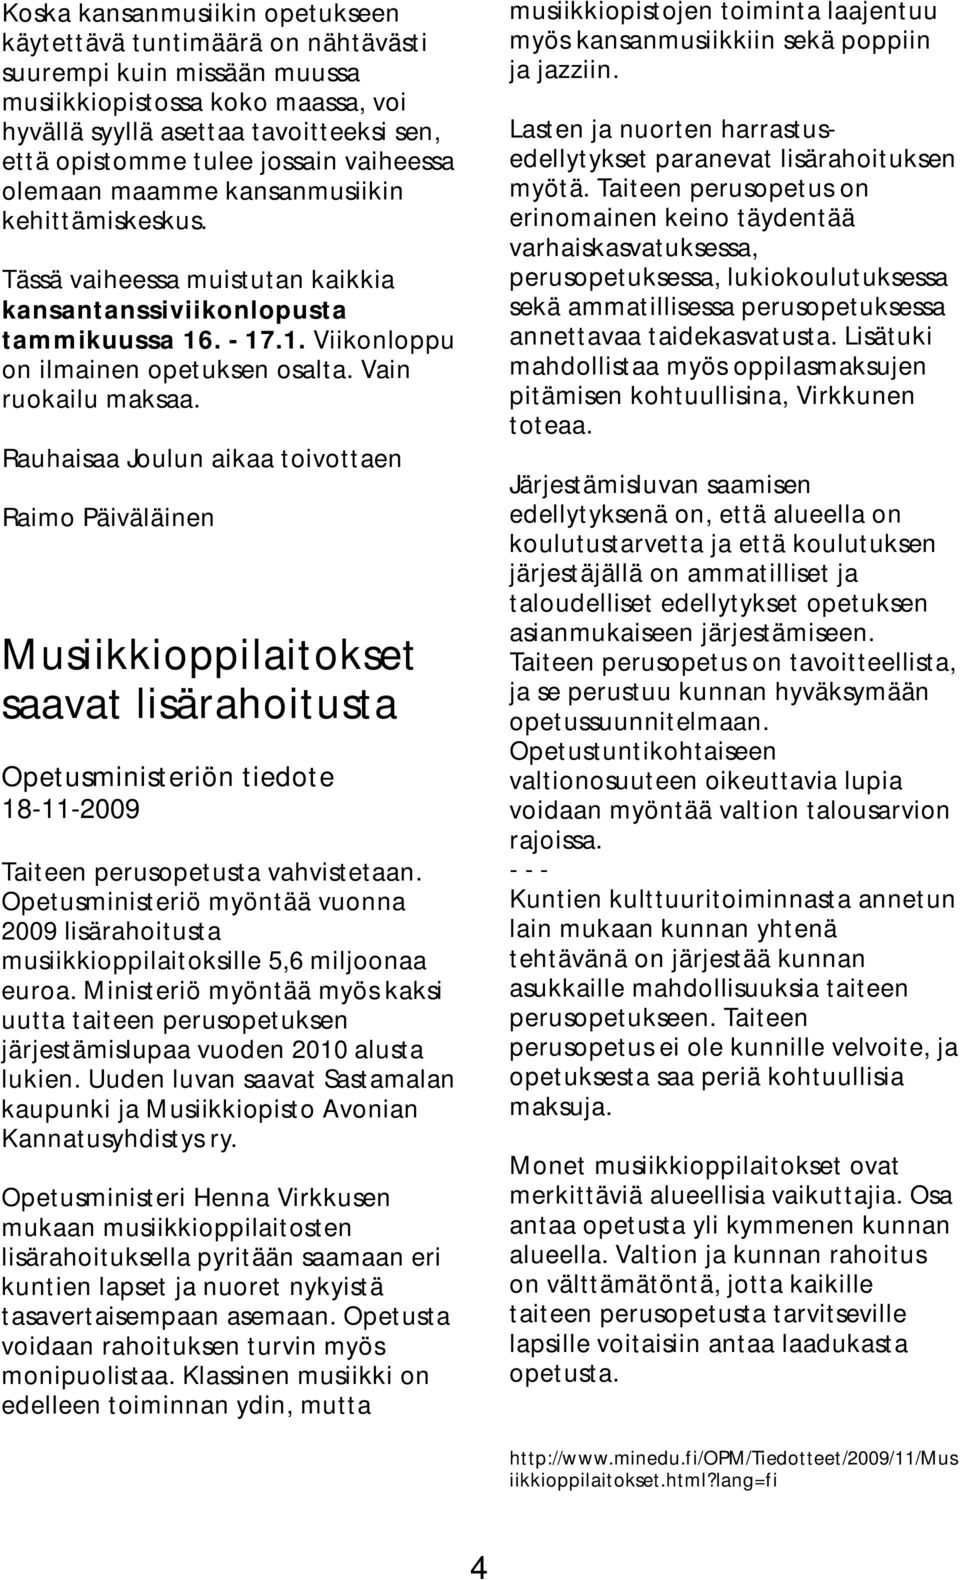 Vain ruokailu maksaa. Rauhaisaa Joulun aikaa toivottaen Raimo Päiväläinen Musiikkioppilaitokset saavat lisärahoitusta Opetusministeriön tiedote 18-11-2009 Taiteen perusopetusta vahvistetaan.